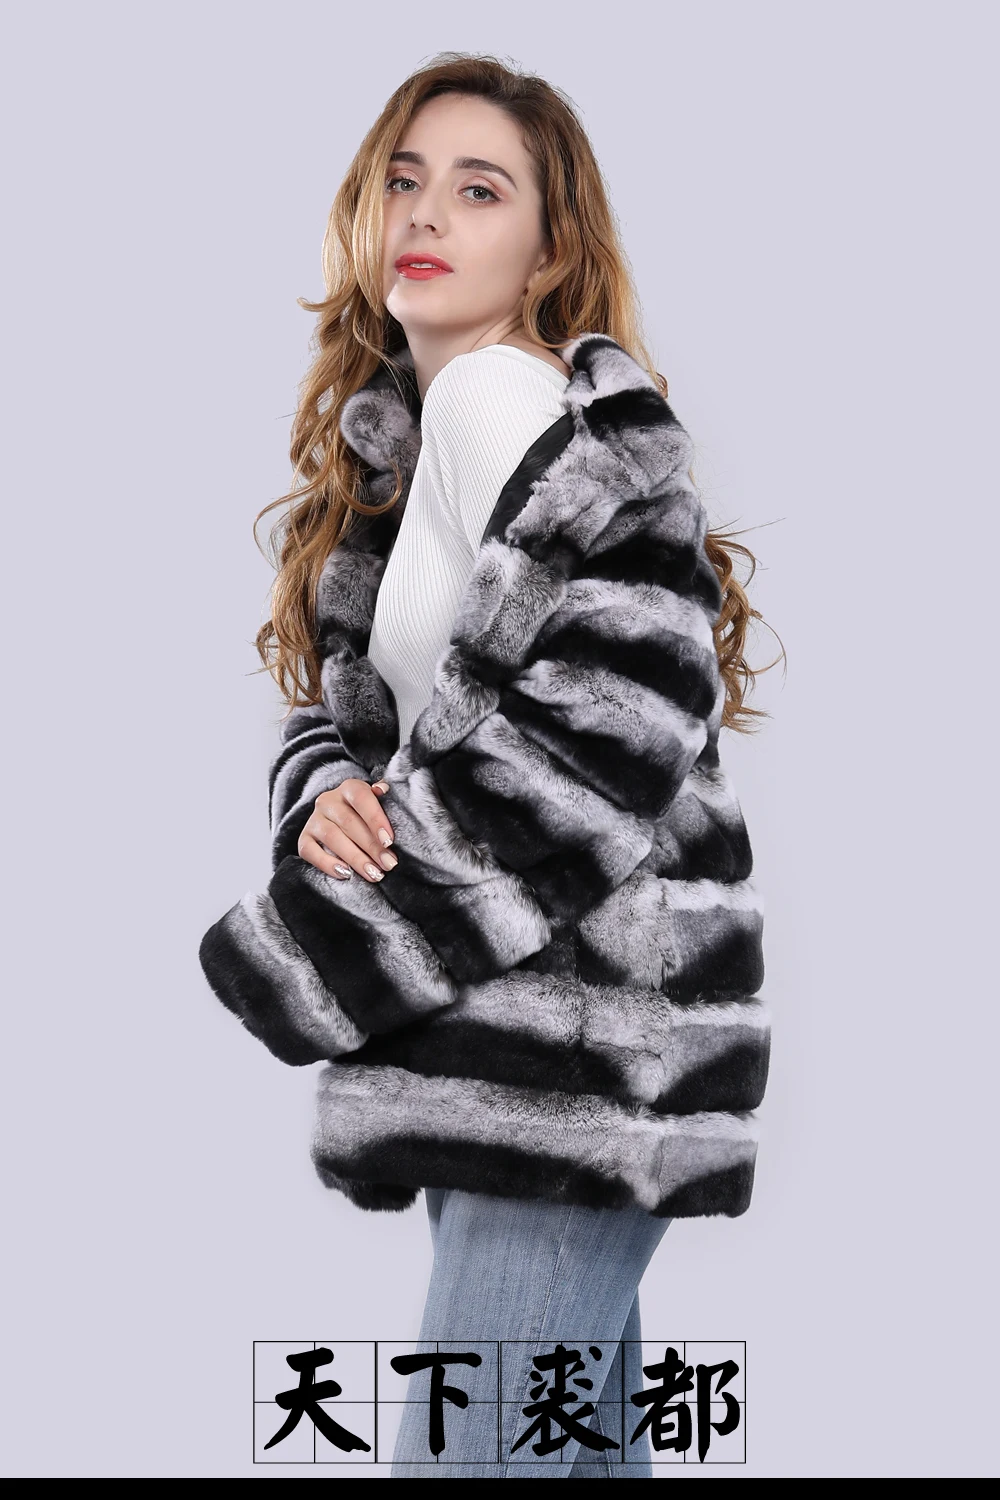 Новая мода Шиншилла натуральный мех кролика рекс пальто зимние женские пушистые меховые пальто толстые меховые куртки оптом